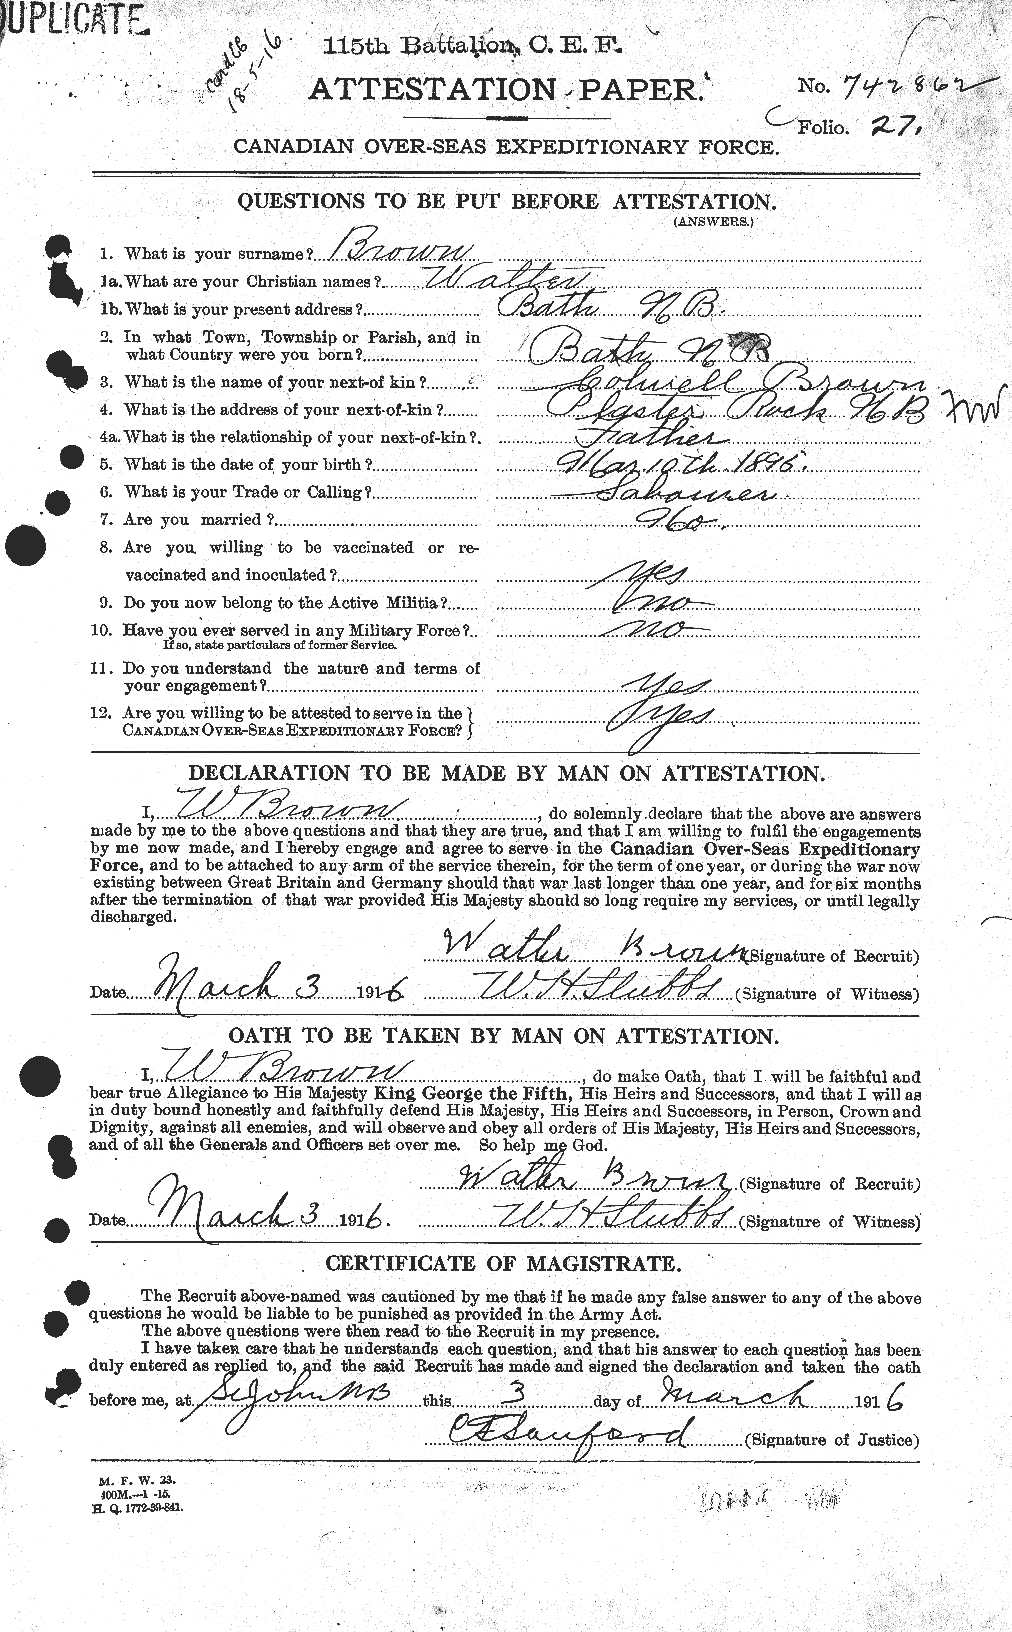 Dossiers du Personnel de la Première Guerre mondiale - CEC 266653a